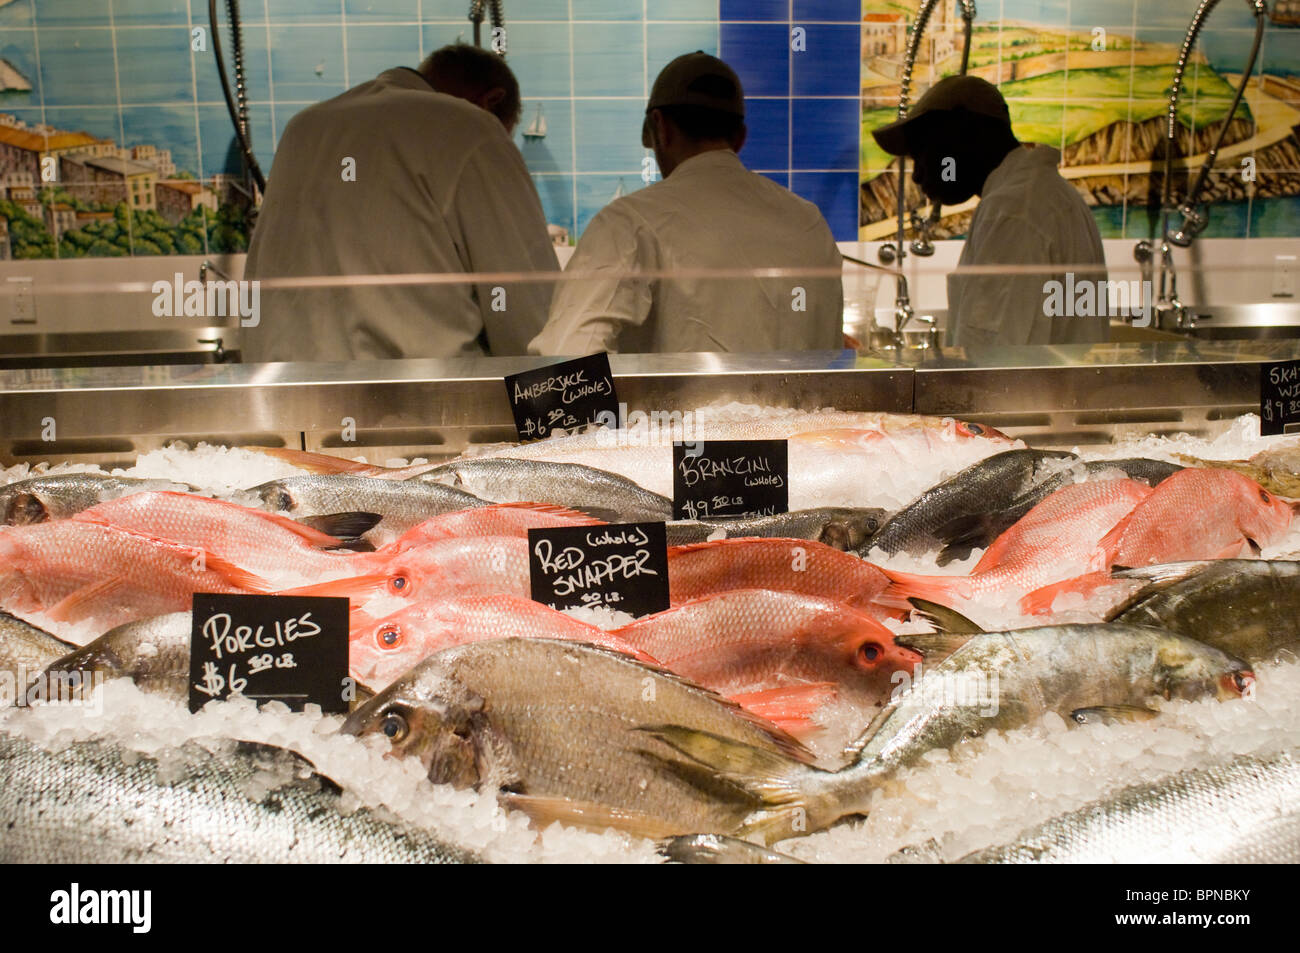 Pesce fresco al pescatore a Eataly il cibo italiano e vino marketplace in New York Foto Stock